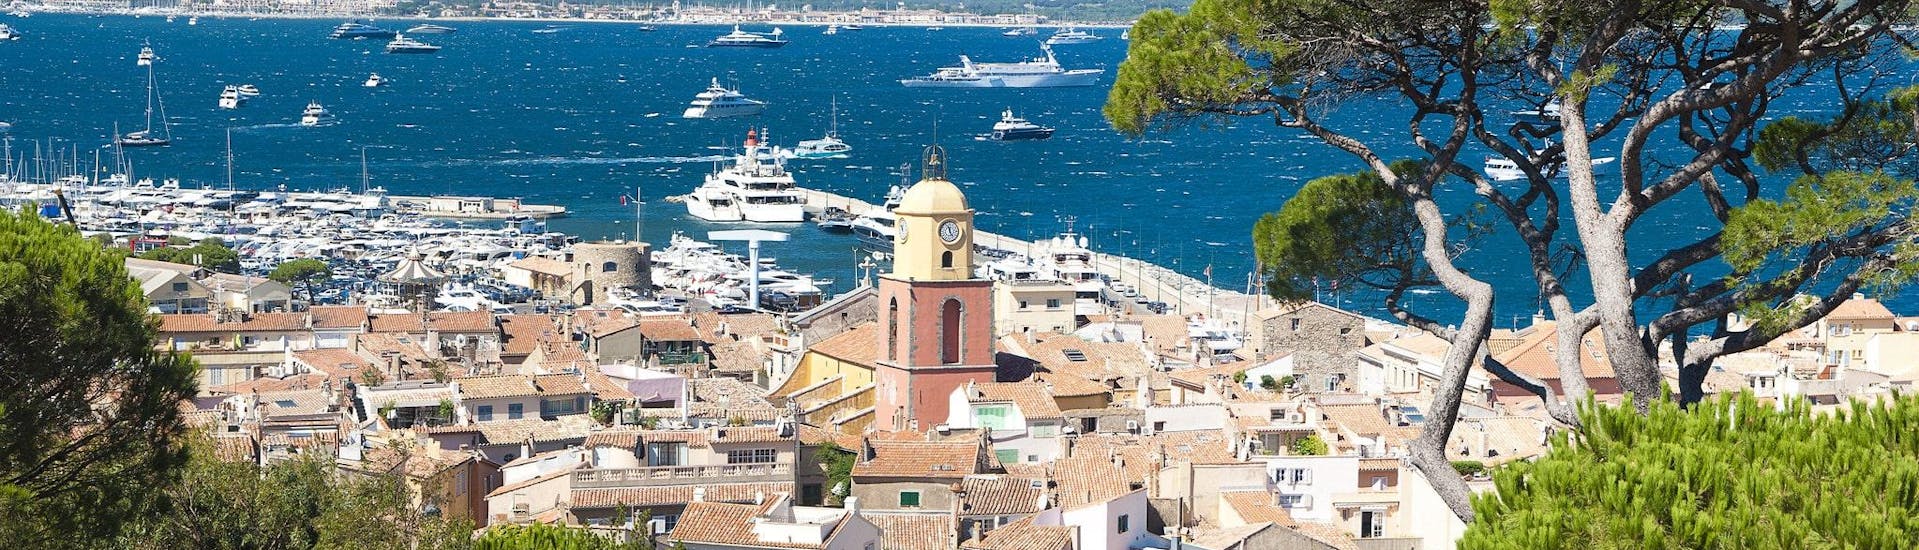 Vue du port de Saint-Tropez, un point de départ populaire pour les balades en bateau le long de la Côte d'Azur.